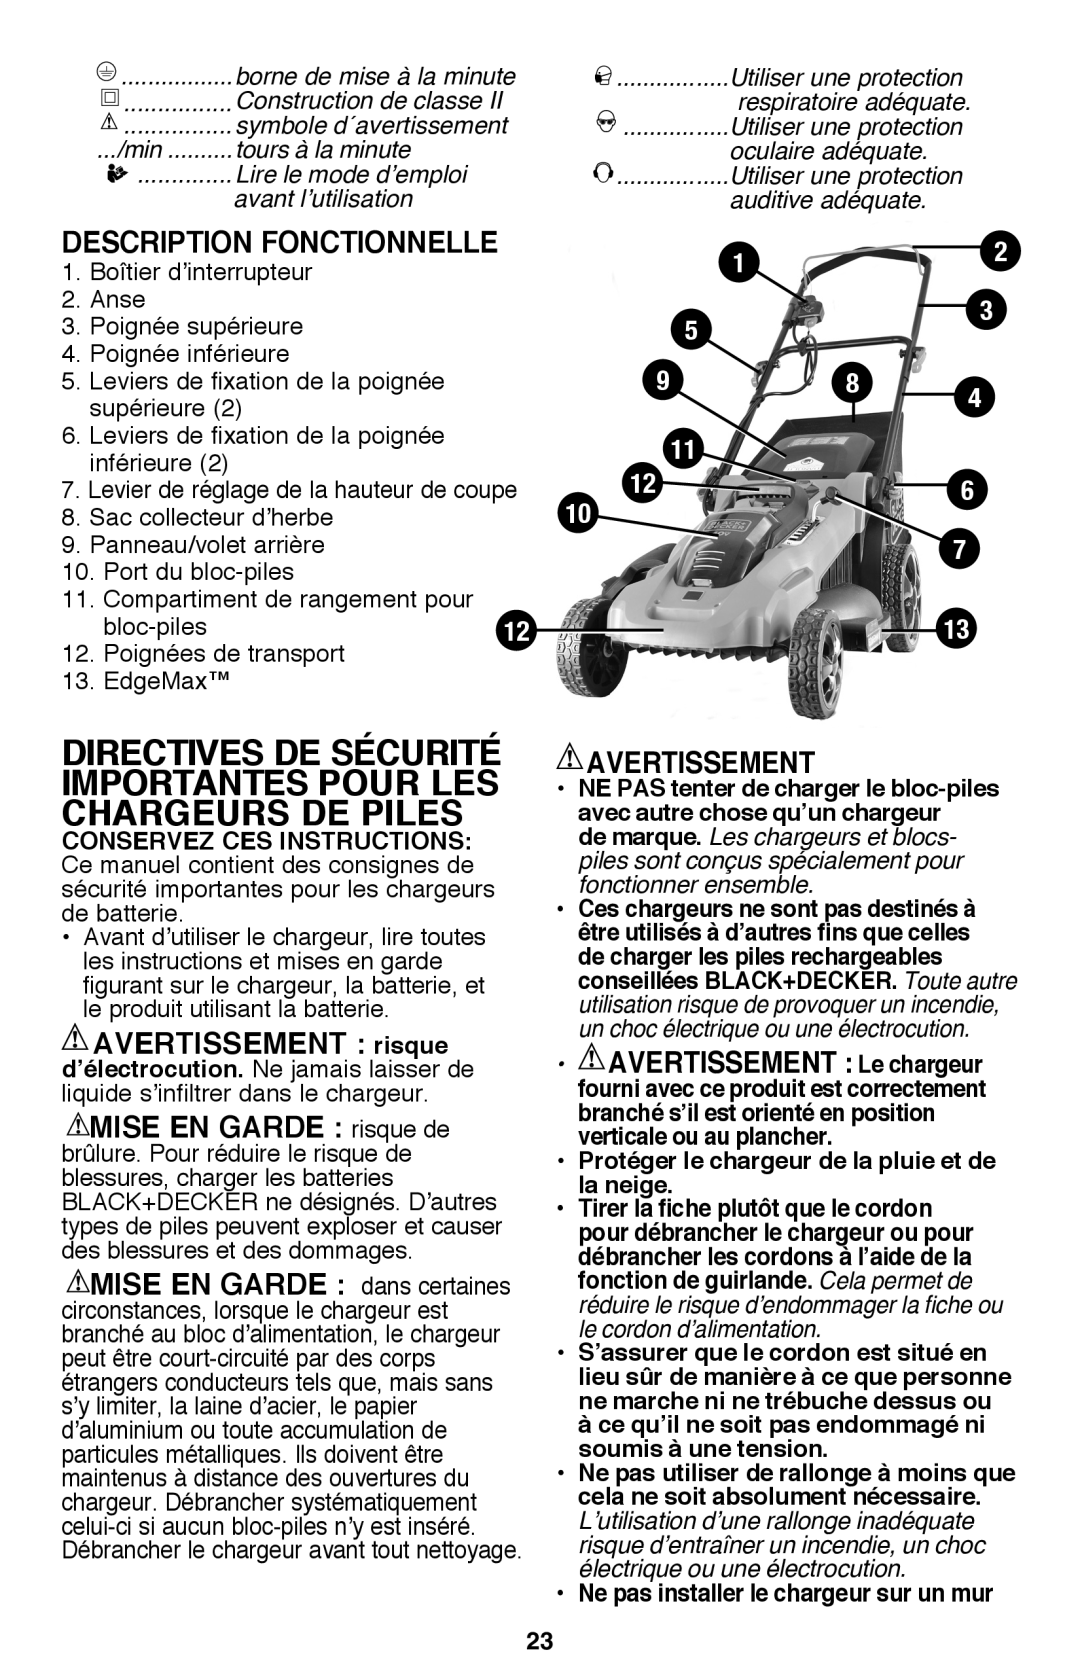 Black & Decker CM2040 instruction manual Directives De Sécurité Importantes Pour Les Chargeurs De Piles, Avertissement 